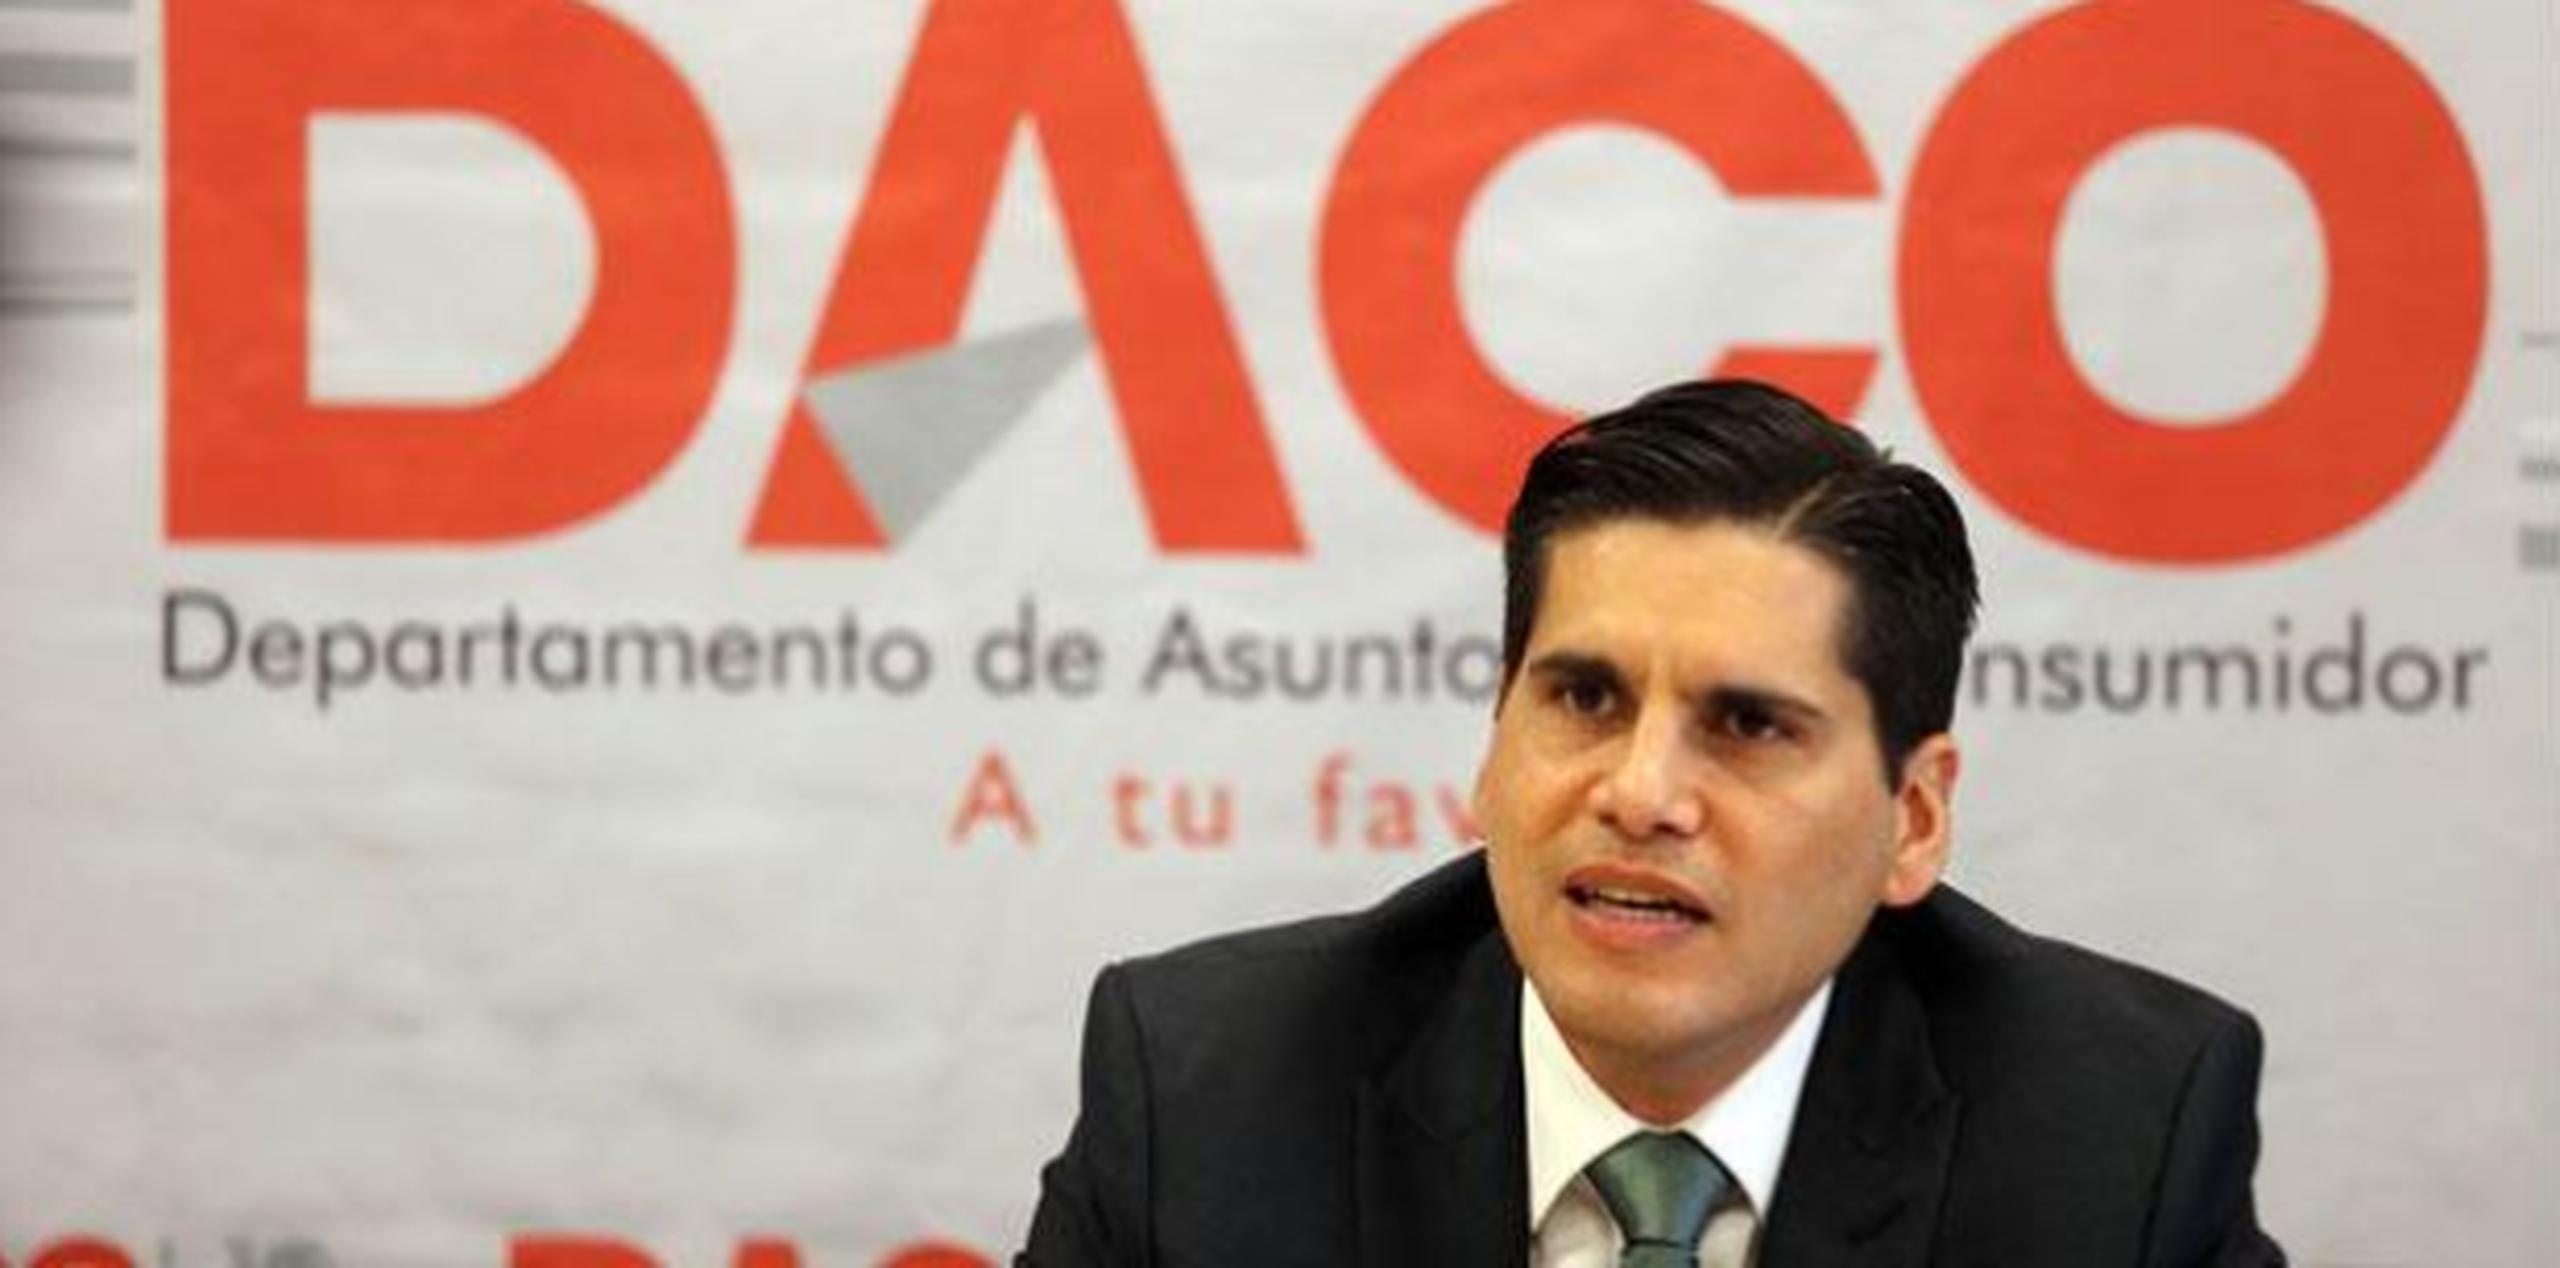 Adames Soto ha ocupado diversos puestos en el gobierno previo a dirigir DACO. (Archivo)